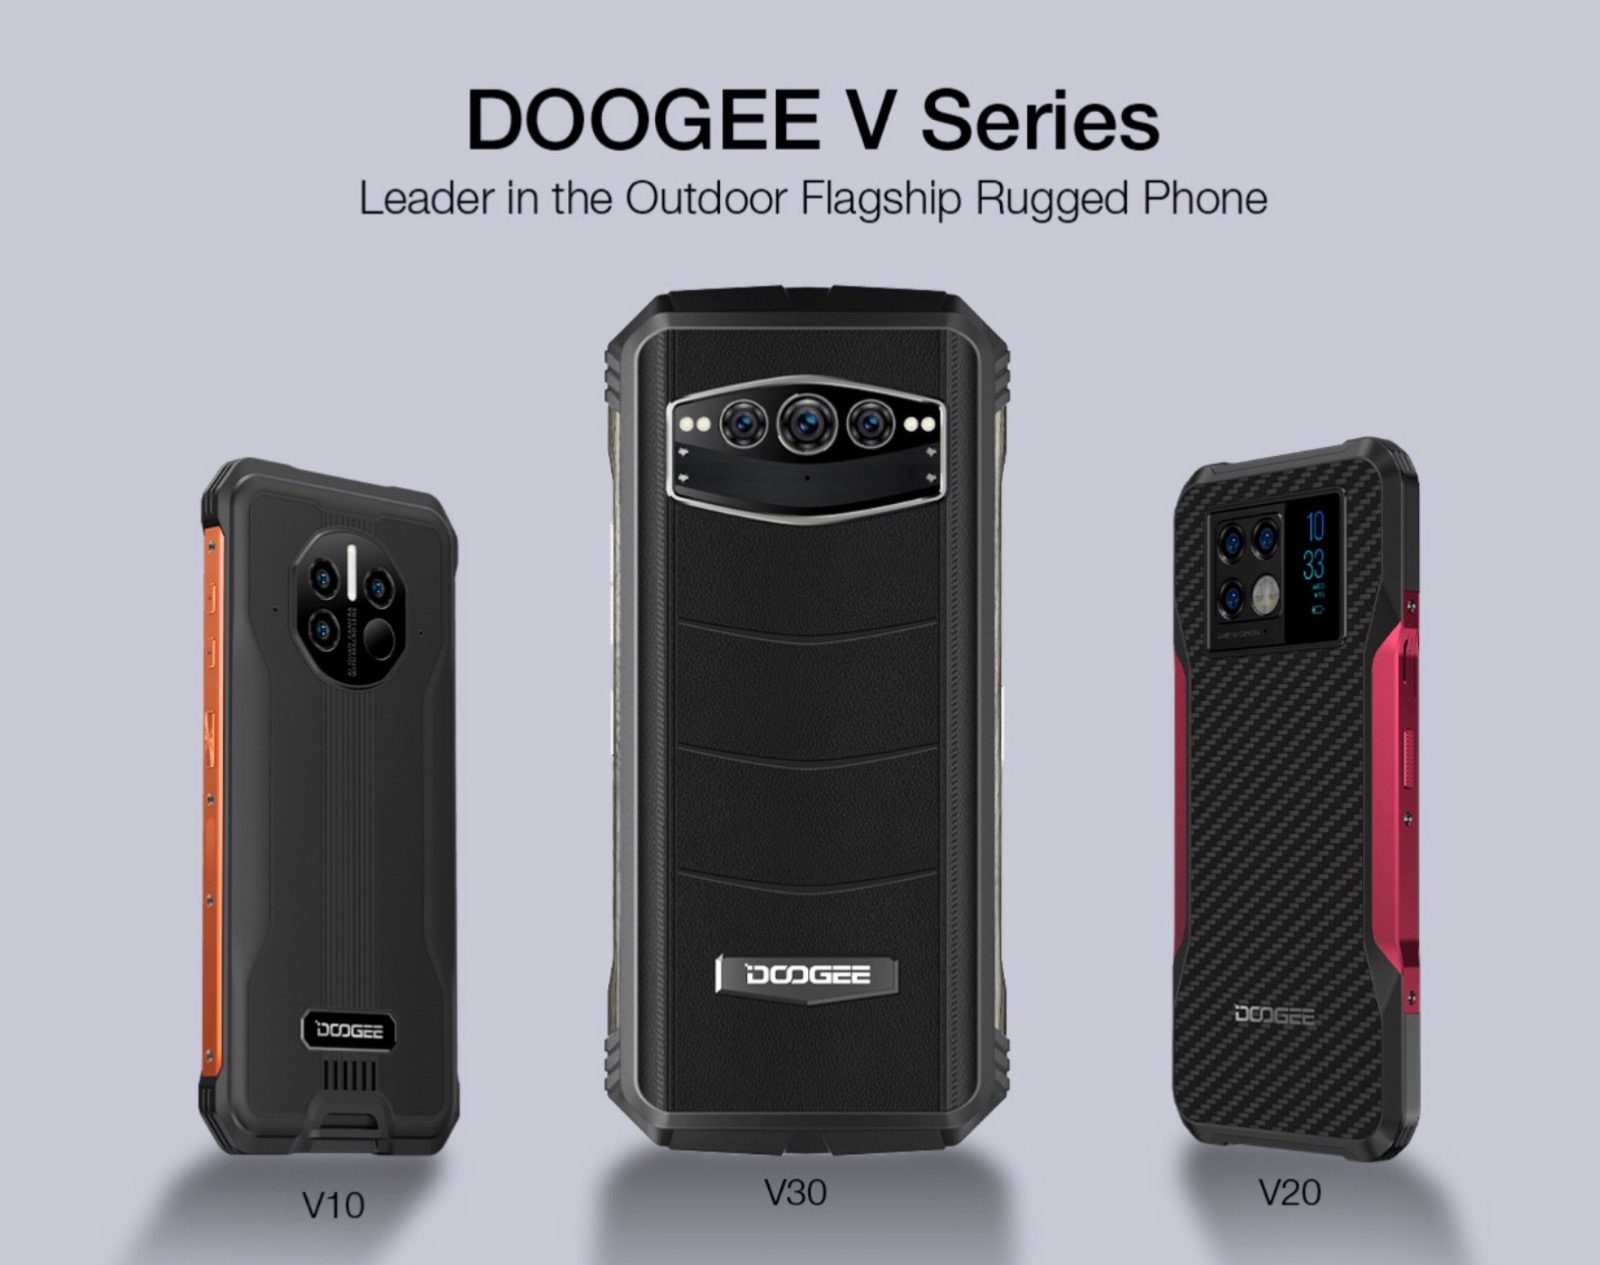 Doogee Serie V, i telefoni rugged per uomini "rugged"